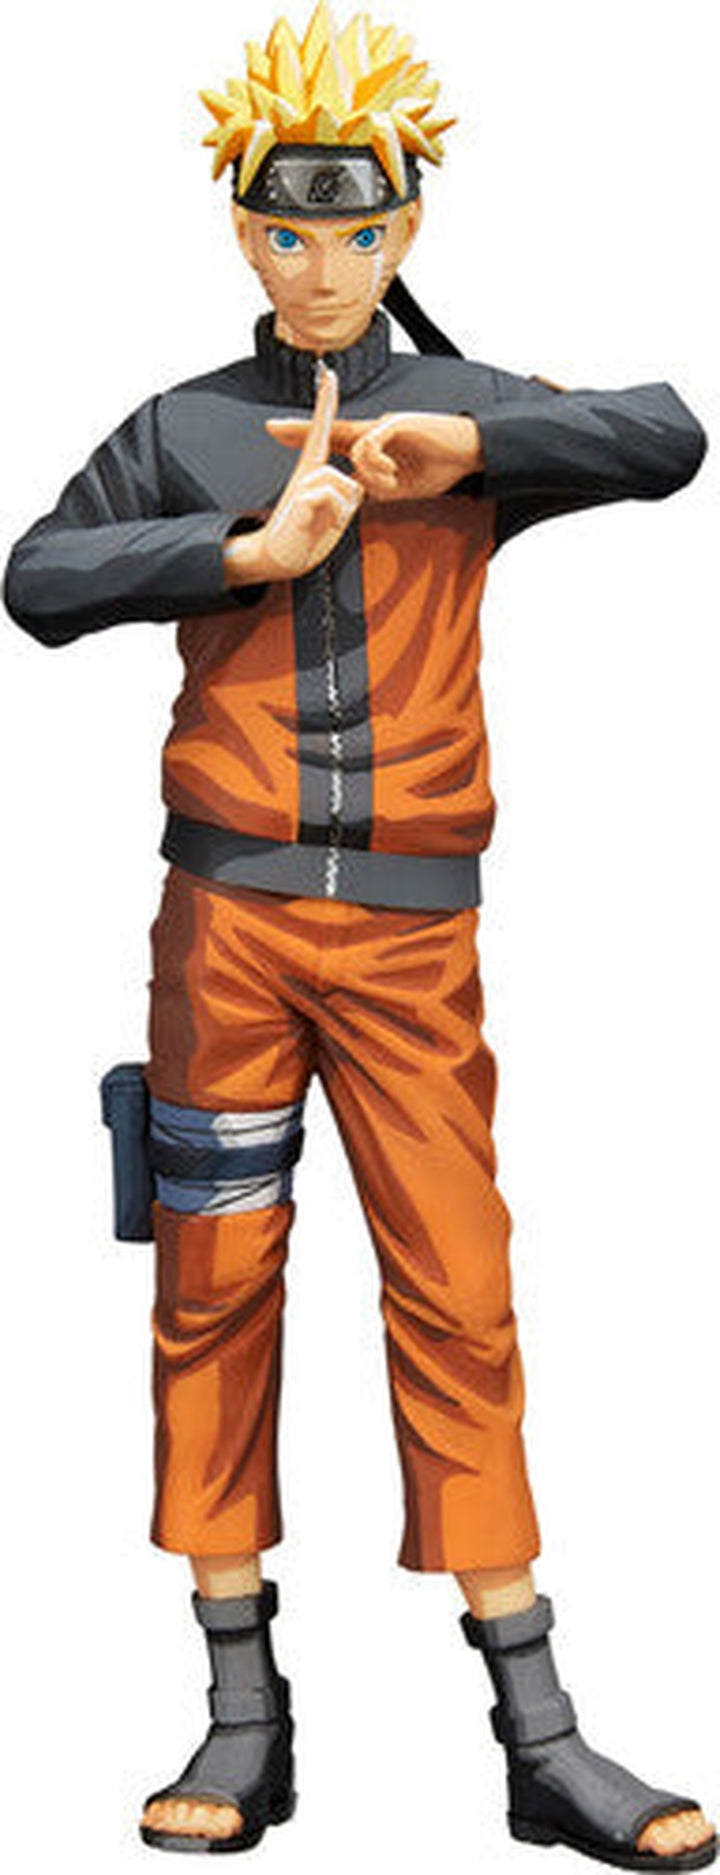 BanPresto - Naruto Shippuden Grandista nero Uzumaki Naruto Statue